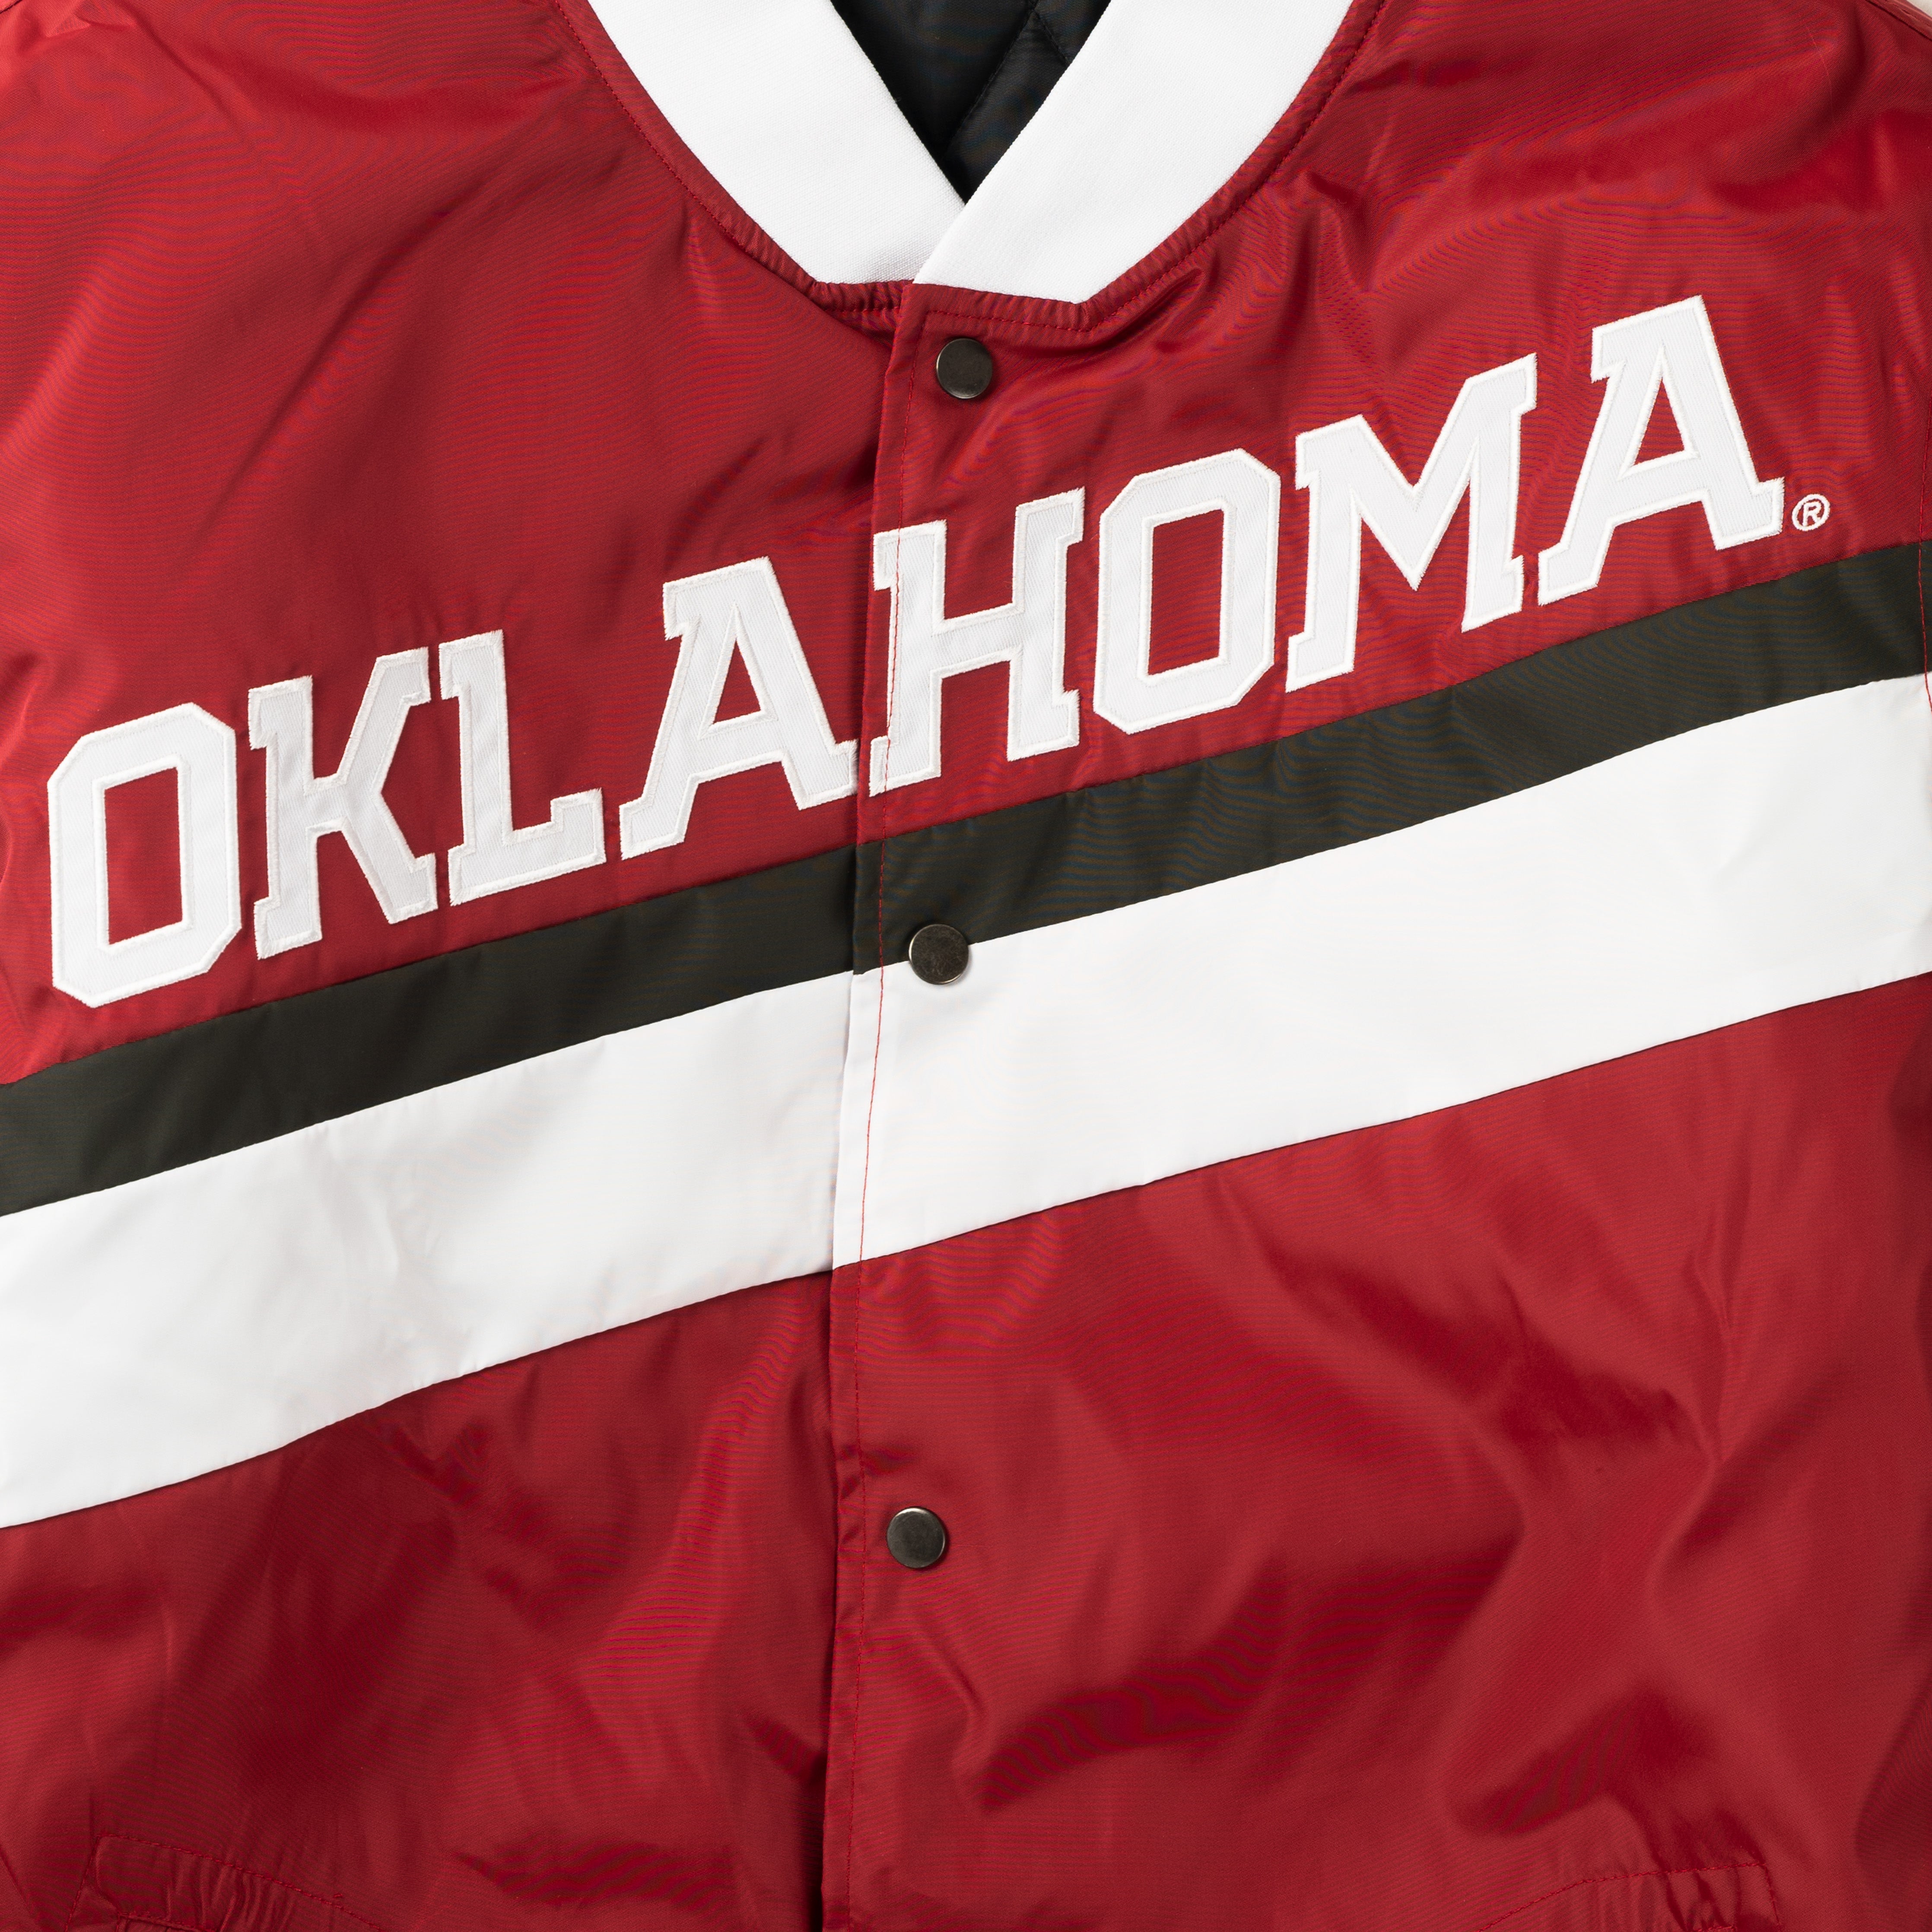 Oklahoma Sooners Men’s Championship Jacket